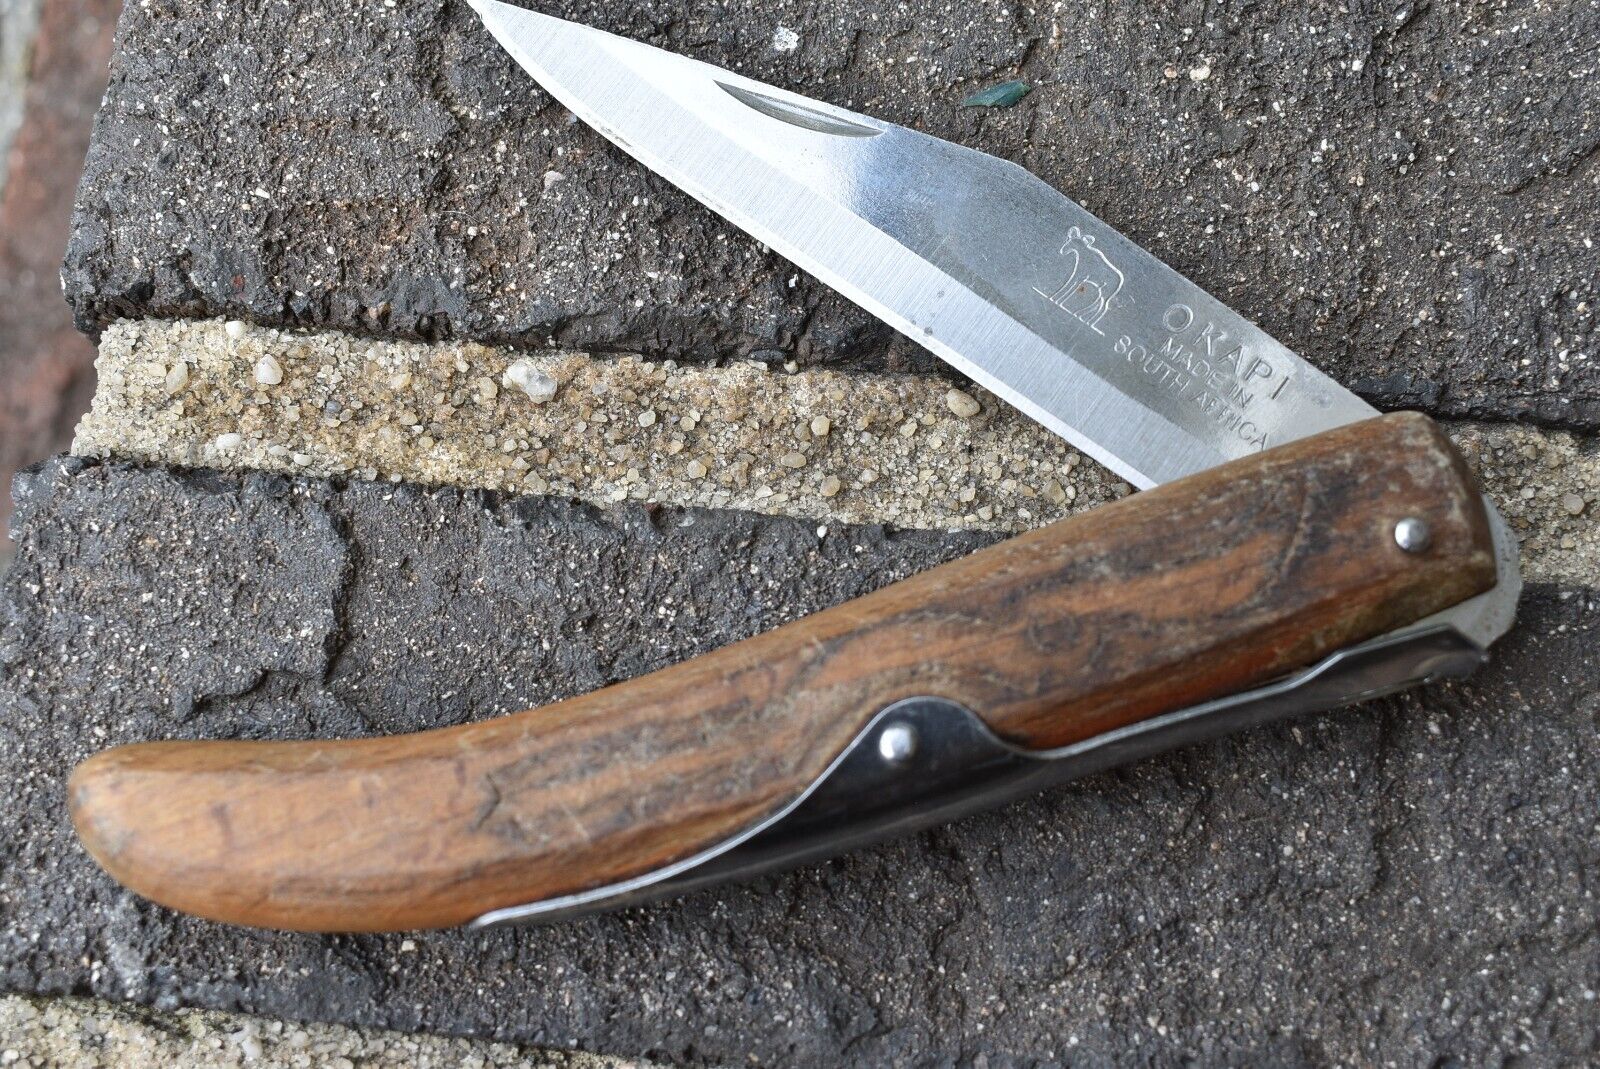 OKAPI KNIFE MADE IN SOUTH AFRICA LOCK VINTAGE POCKET